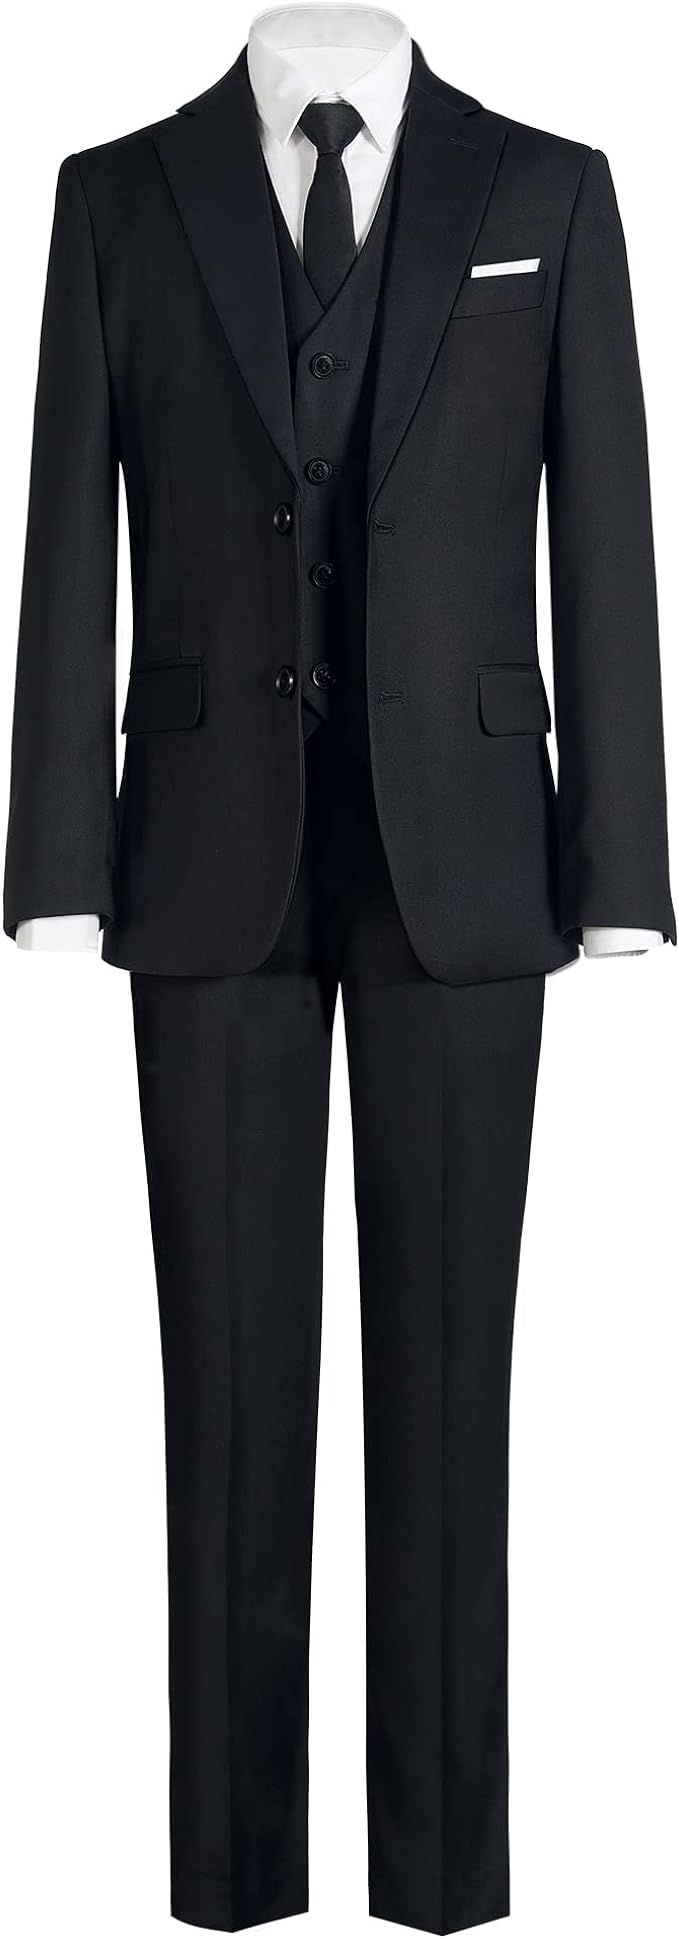 Marvelous World Boys' Formal Slim Fit Suit Set, Adjustable Waist | Amazon (US)